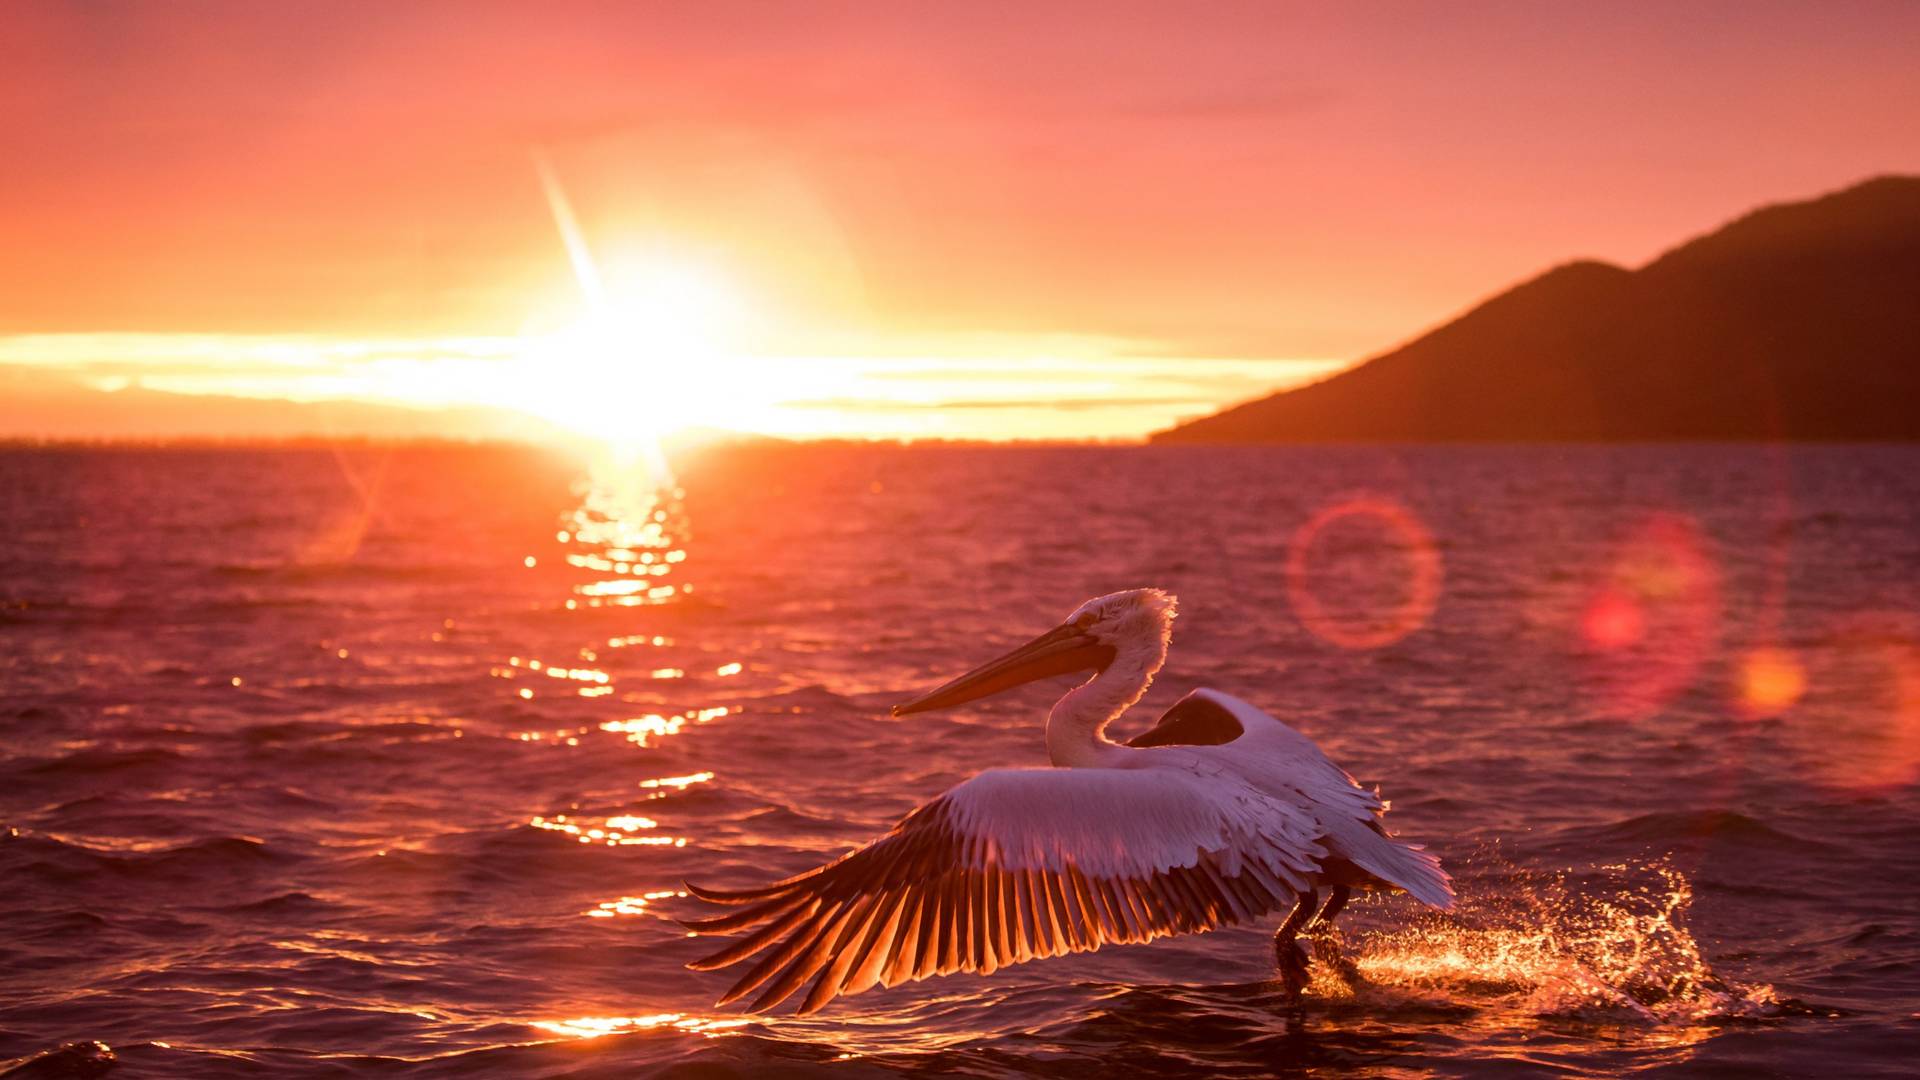 Csodálatos képek készültek a pelikánok életéről